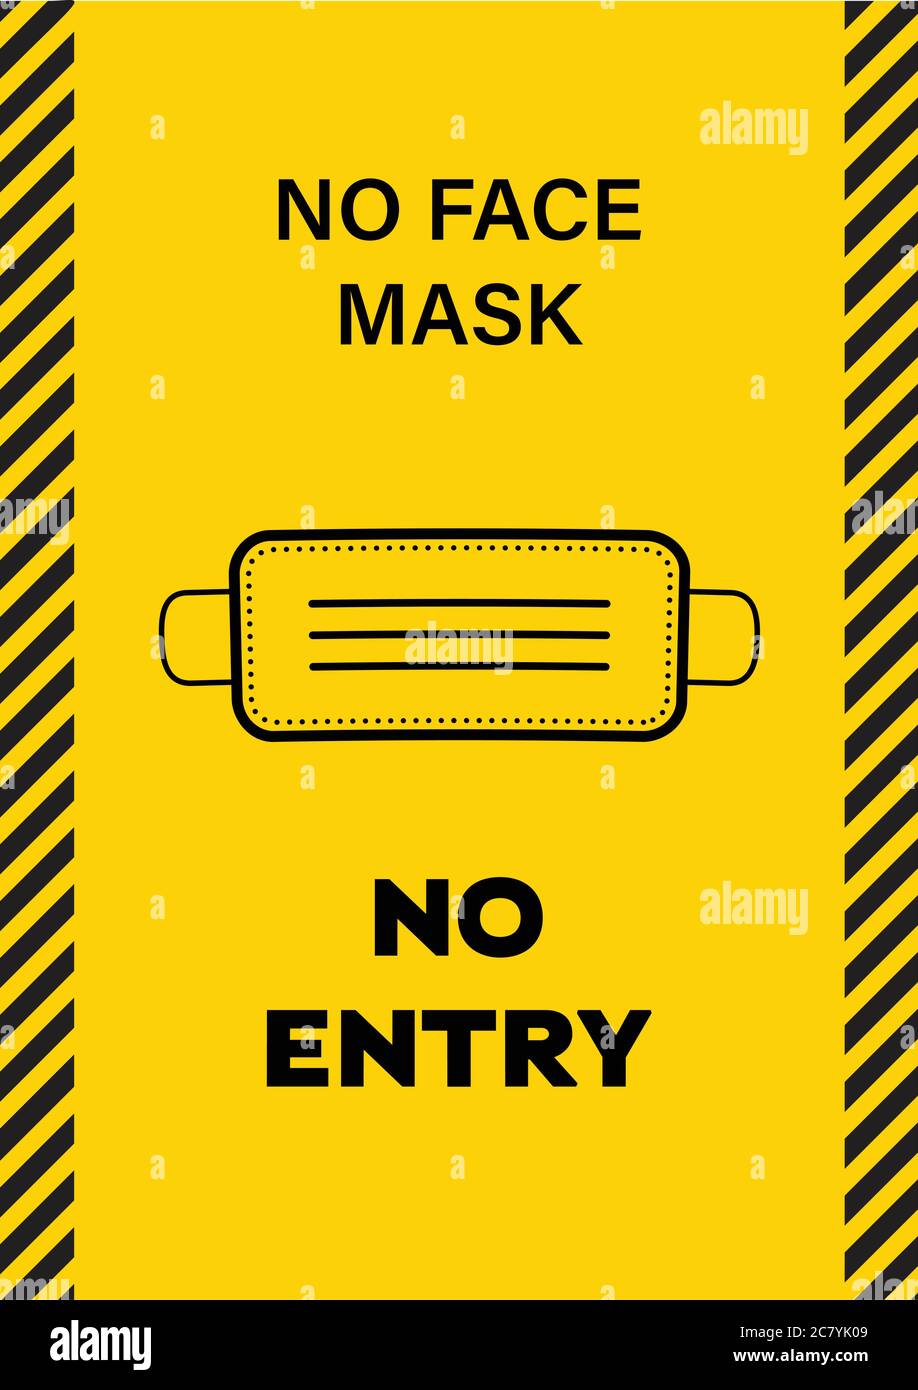 Aufkleber mit dem Text, No Face Mask kein Eintrag, Vektor-Illustration, Gelb und Schwarz Aufkleber für Gesichtsmaske tragen mit Gesichtsmaske Zeichen Stock Vektor